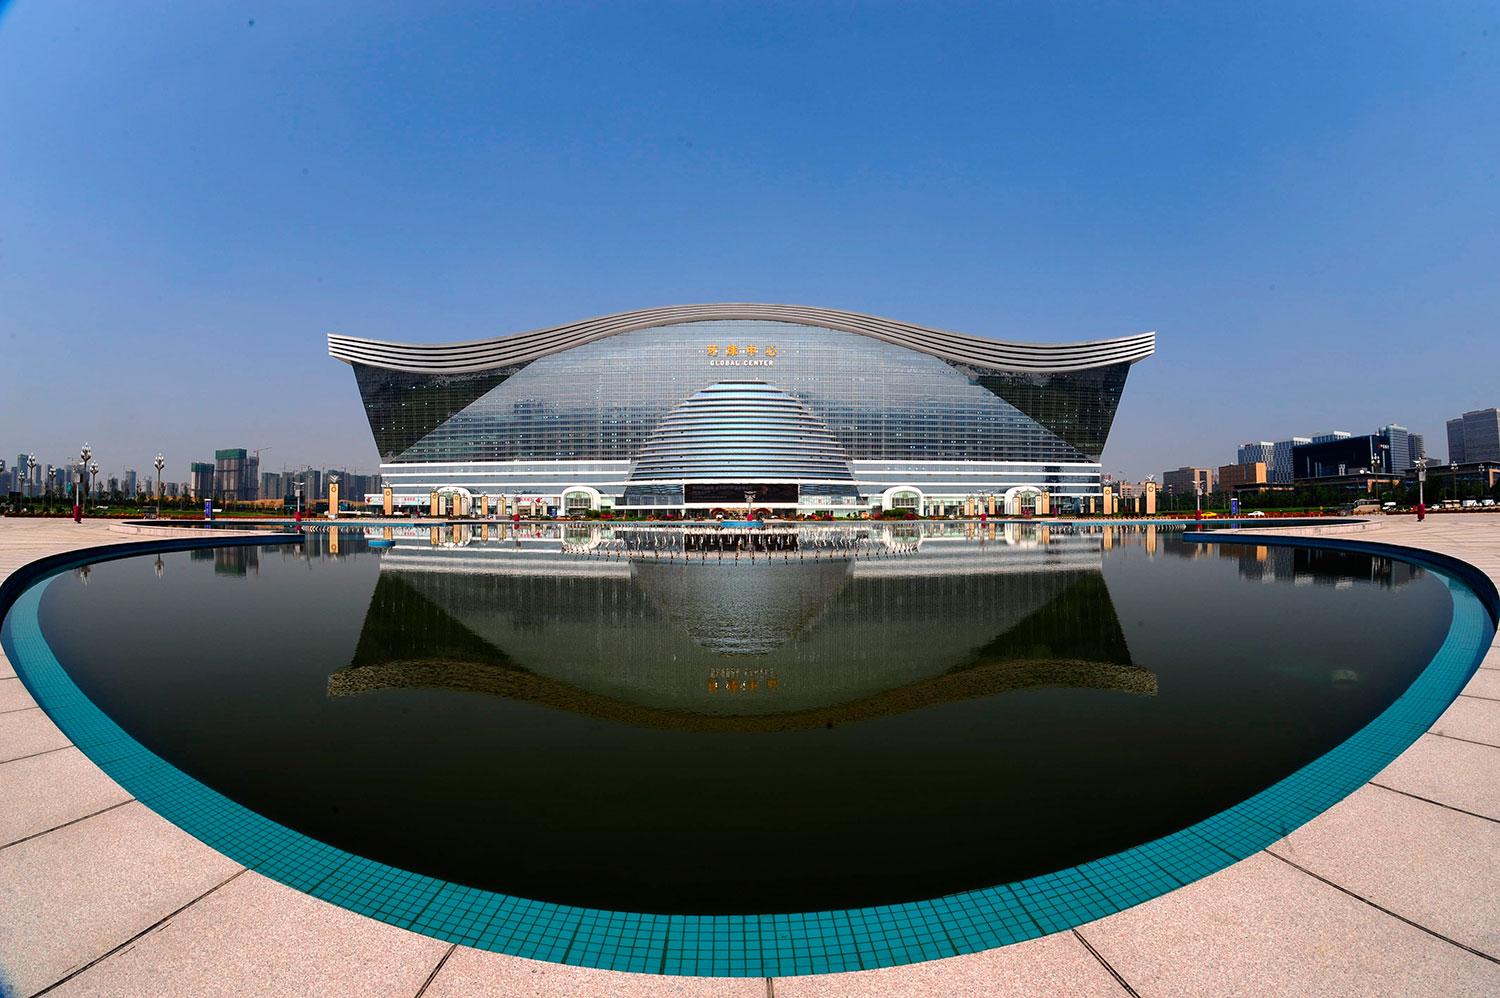 Den 28 juni 2013 öppnades New Century Global Centre för allmänheten, men hela skrytbygget blir klart först mot slutet av året.